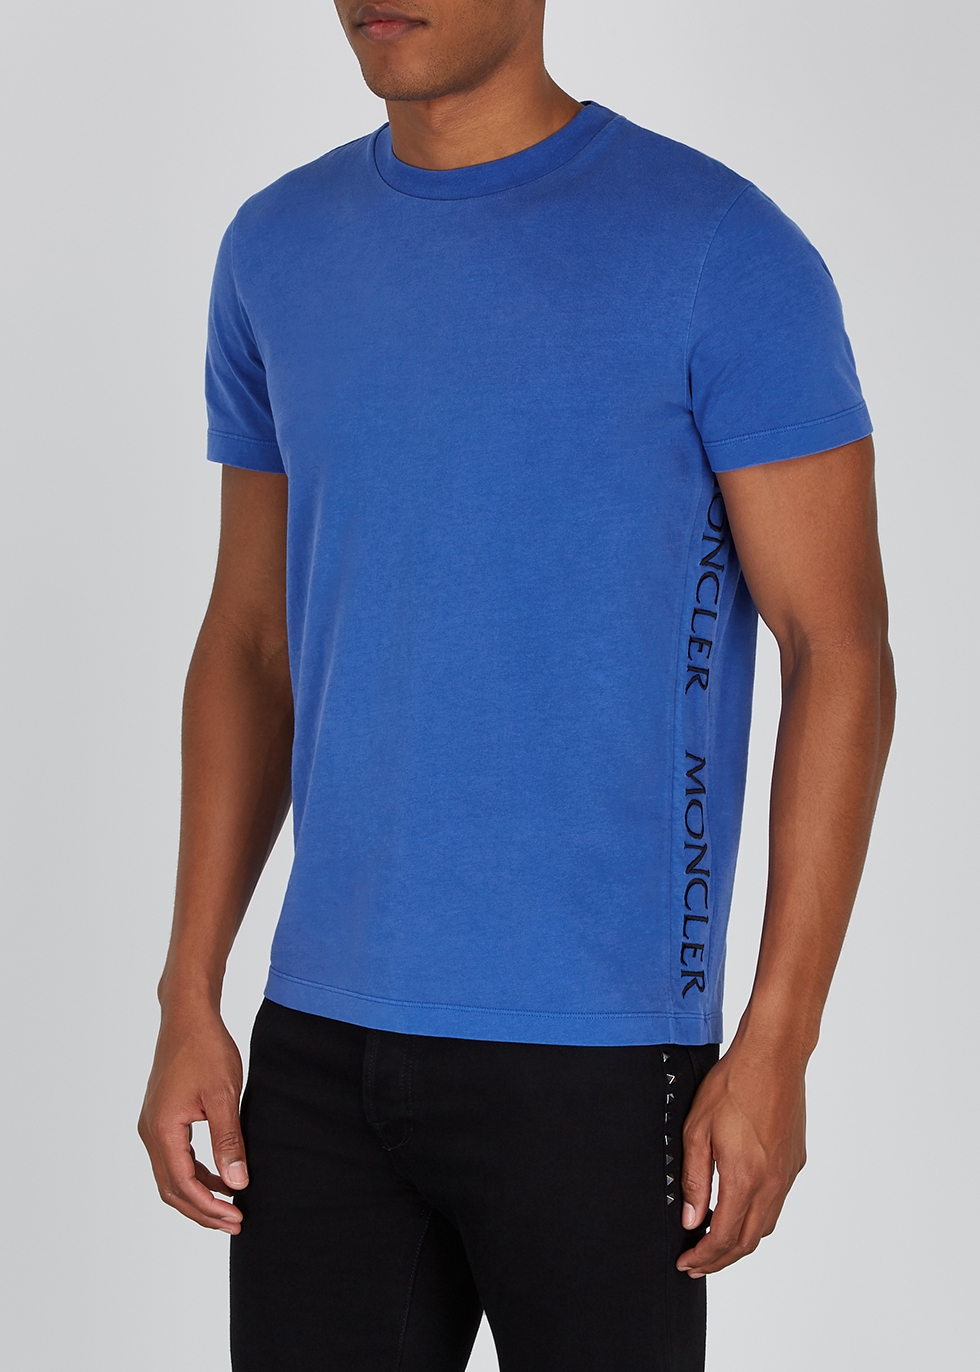 navy blue moncler t shirt